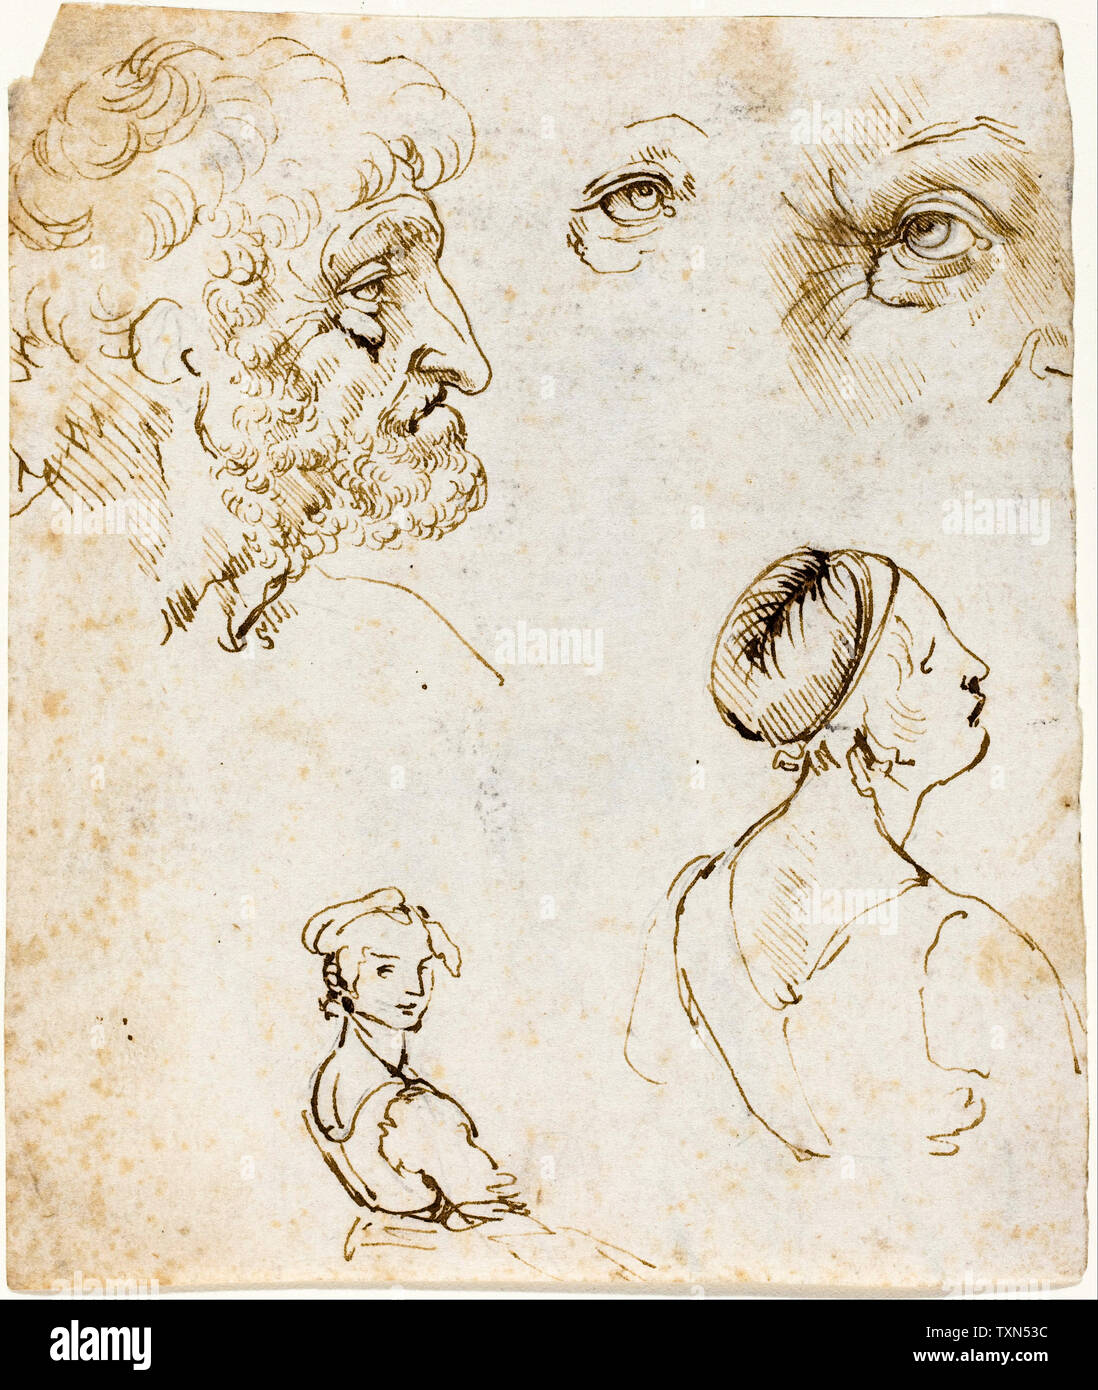 Leonardo Da Vinci, Hoja de estudios, dibujo, circa 1470 Foto de stock